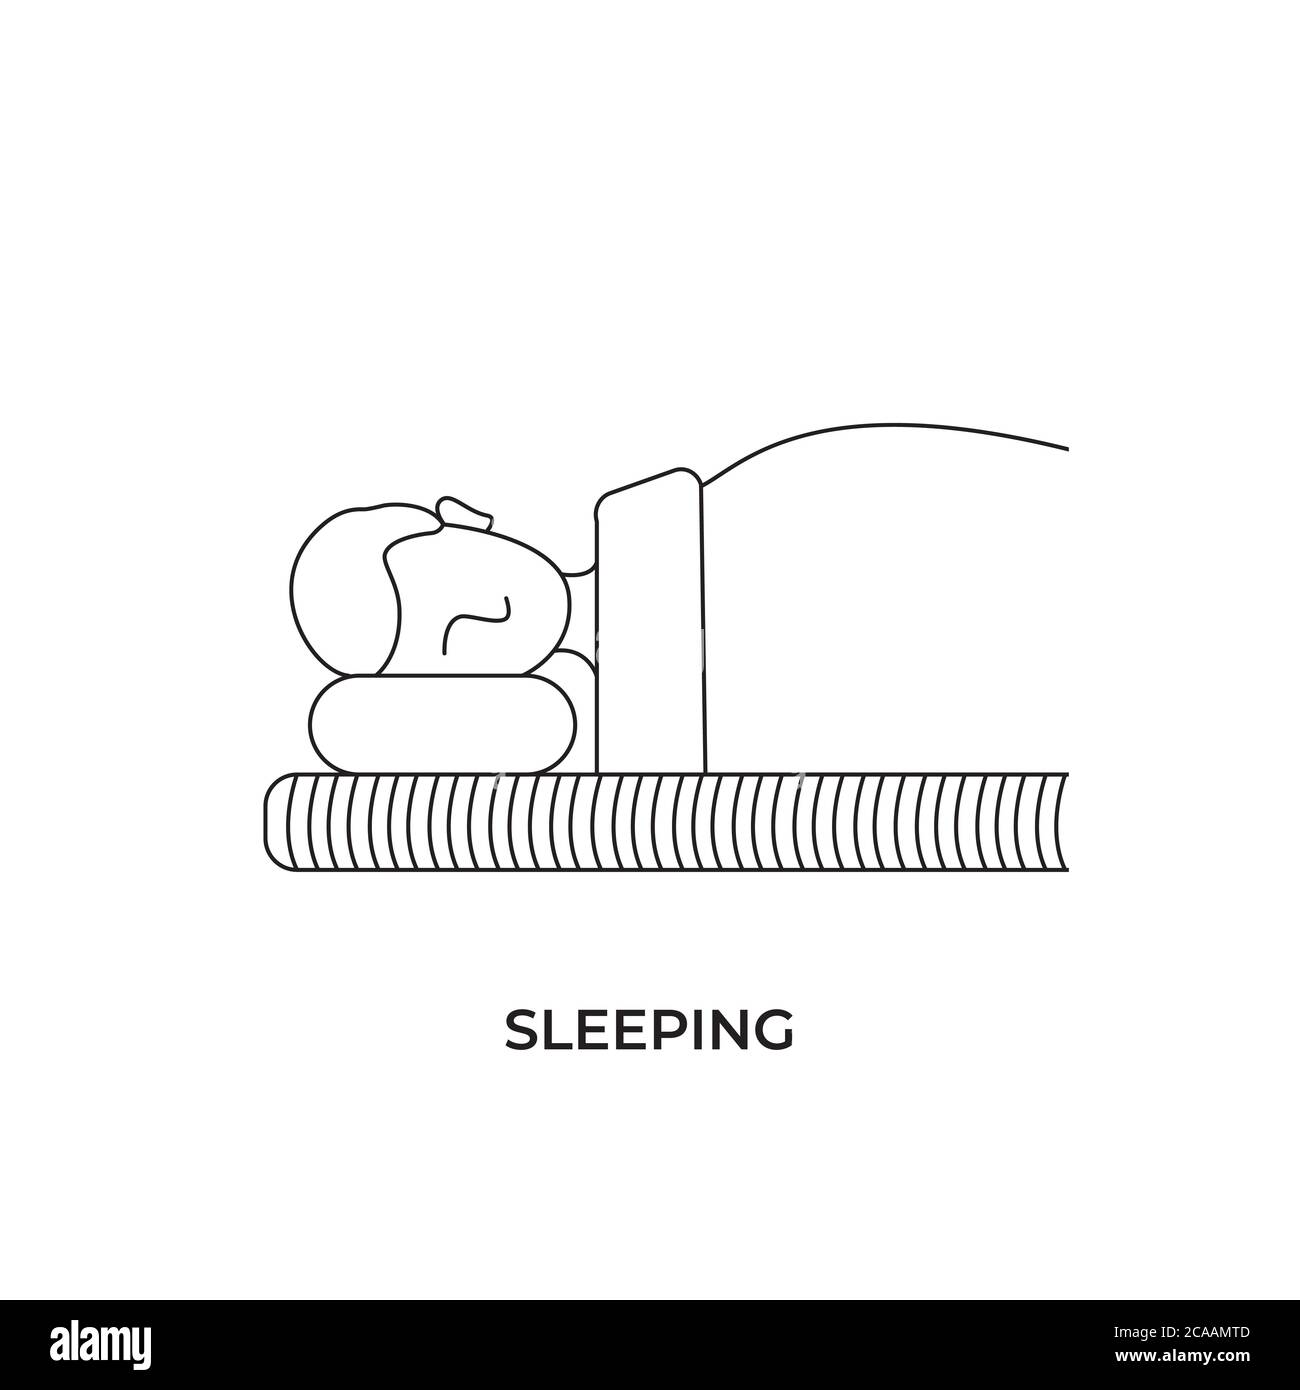 Icône dormir, sommeil - icône moderne d'une seule ligne. Image d'une personne au lit sur un oreiller. Représentation du repos, de la relaxation, de la restauration de l'énergie Illustration de Vecteur